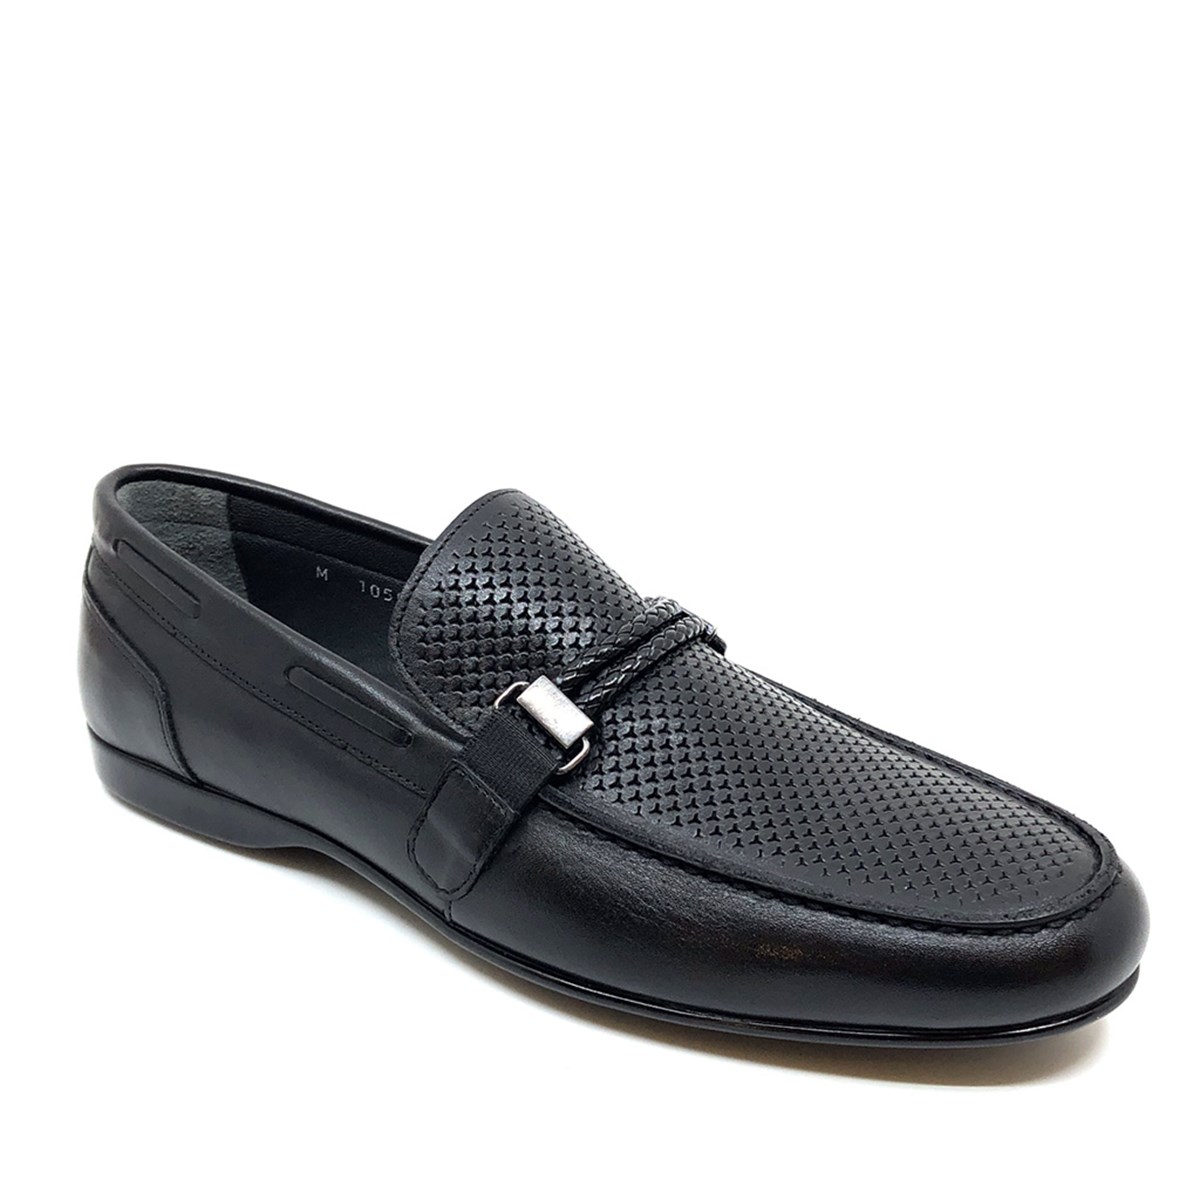 Erkek Bağcıksız Yazlık Loafer  Nubuk Hakiki Deri Ayakkabı, Renk: Siyah, Beden: 39